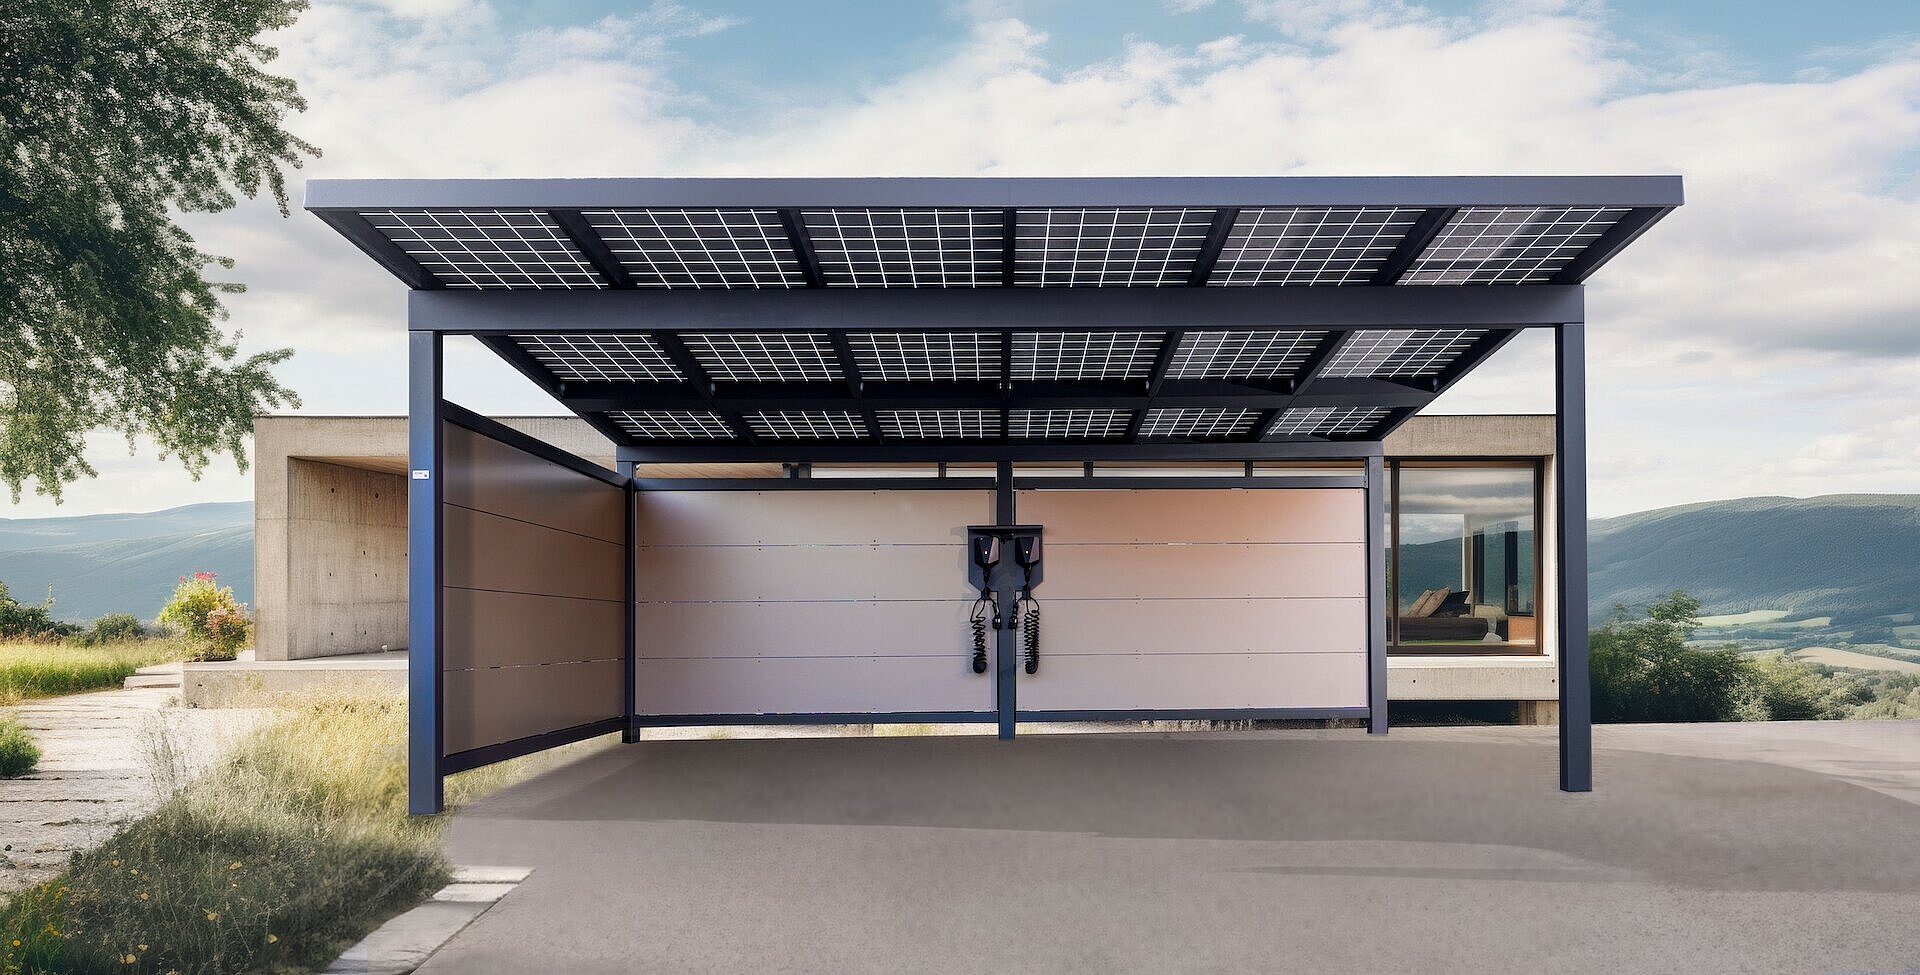 Frontansicht: Zwei Autos stehen unter einem Doppelcarport mit Solarmodulen